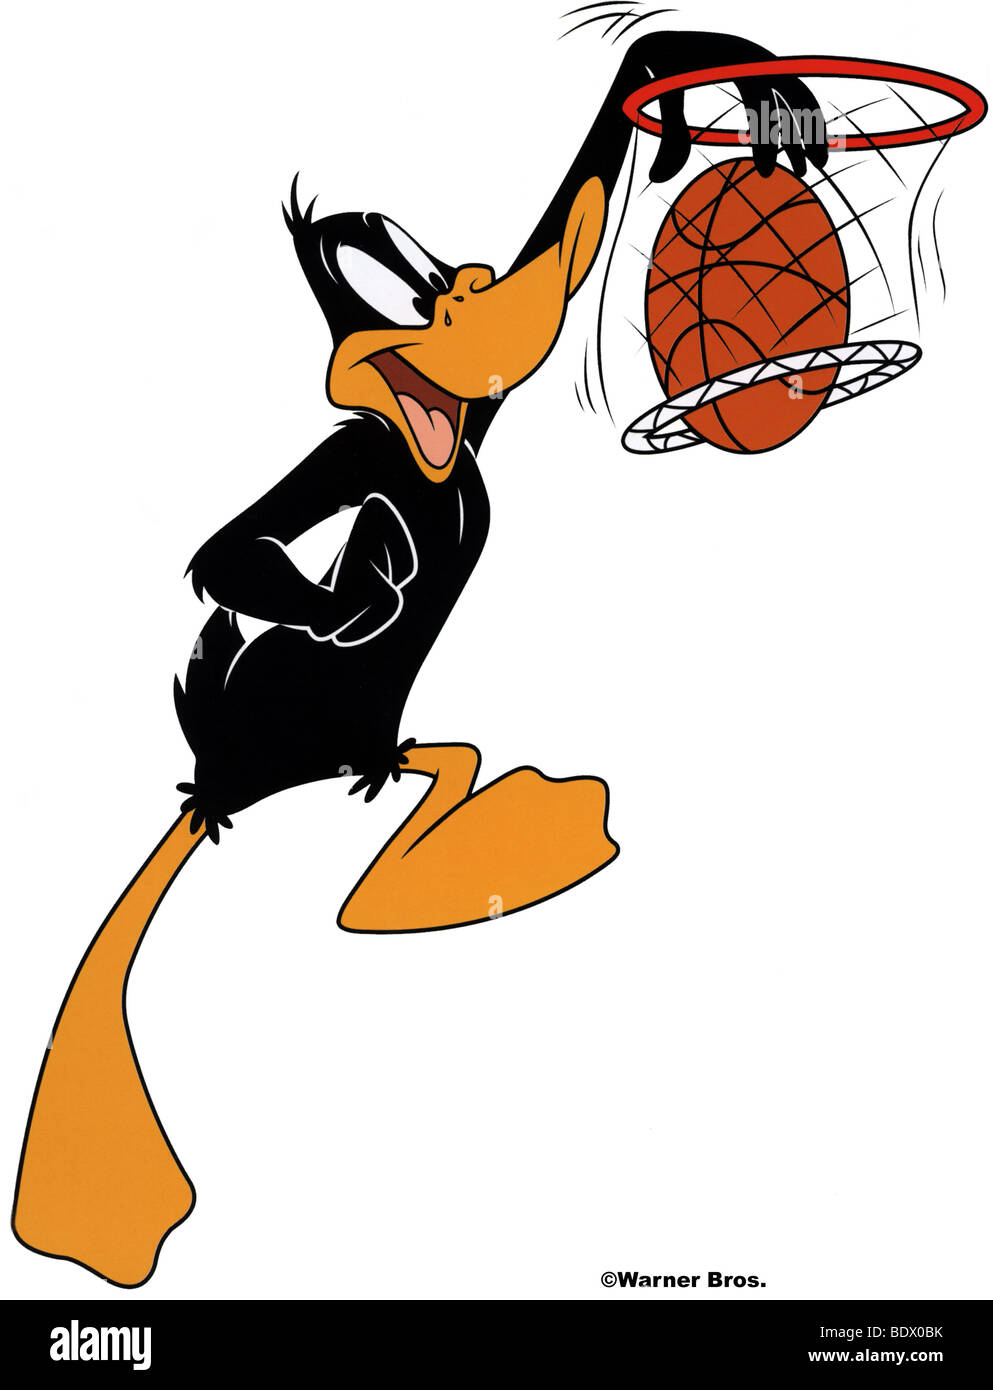 El Pato Lucas - Warner Bros personaje de dibujos animados de la serie  Looney Tunes Fotografía de stock - Alamy